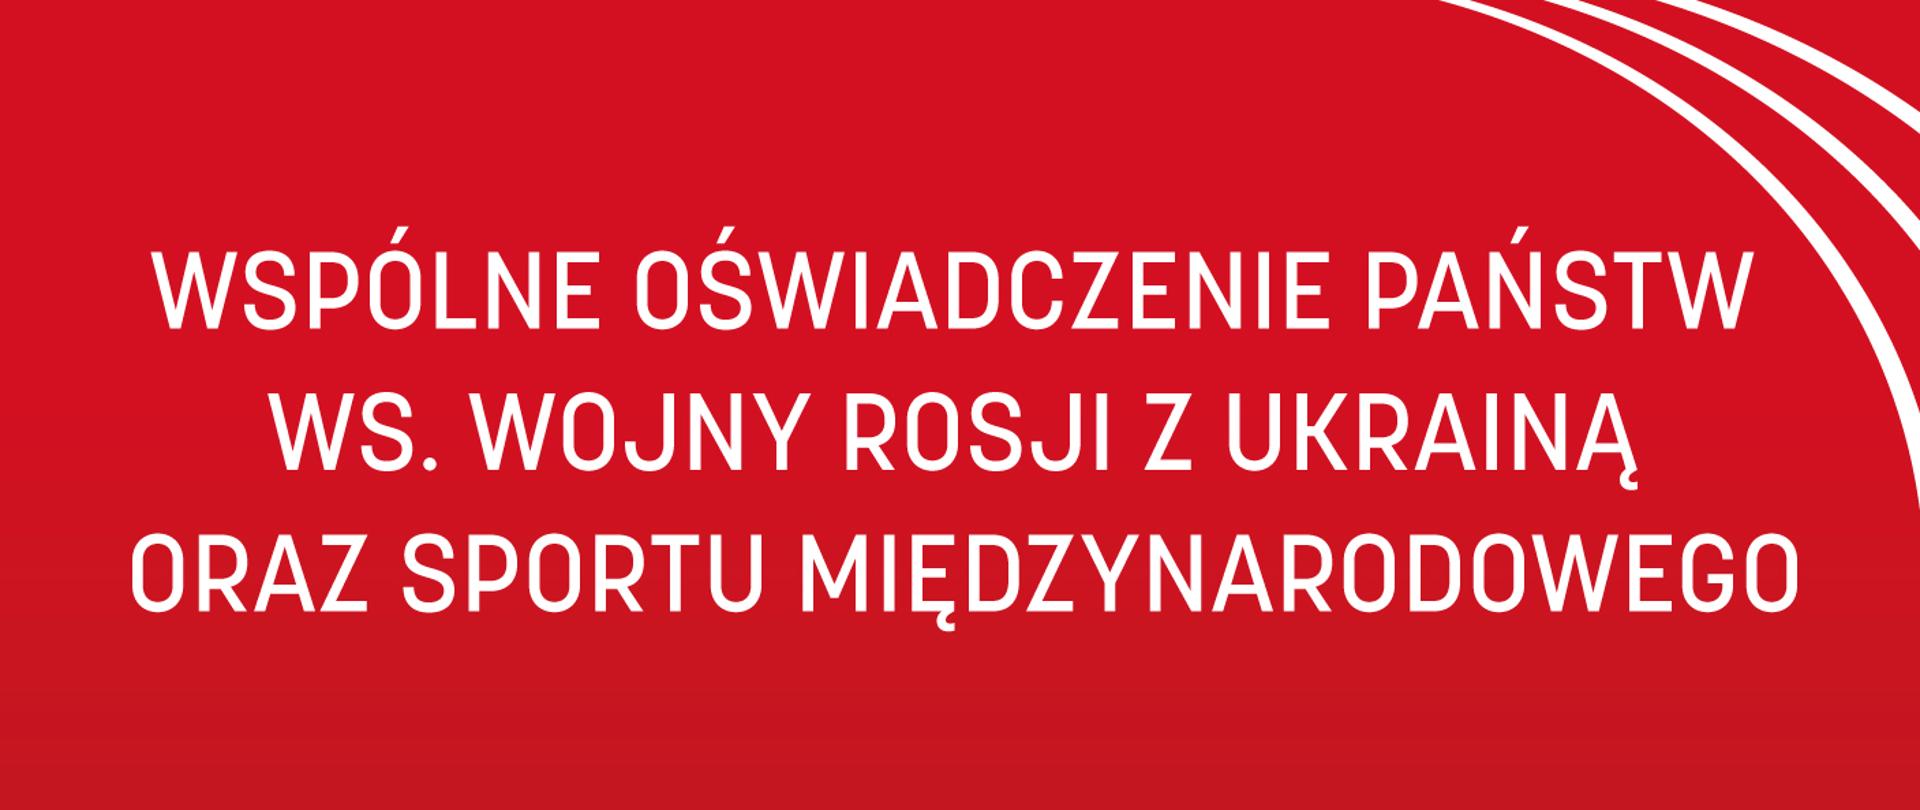 WSPÓLNE OŚWIADCZENIE PAŃSTW WS. WOJNY ROSJI Z UKRAINĄ ORAZ SPORTU MIĘDZYNARODOWEGO - plansza z napisem na czerwonym tle, w prawym górnym rogu 3 łuki - znak graficzny ministerstwa